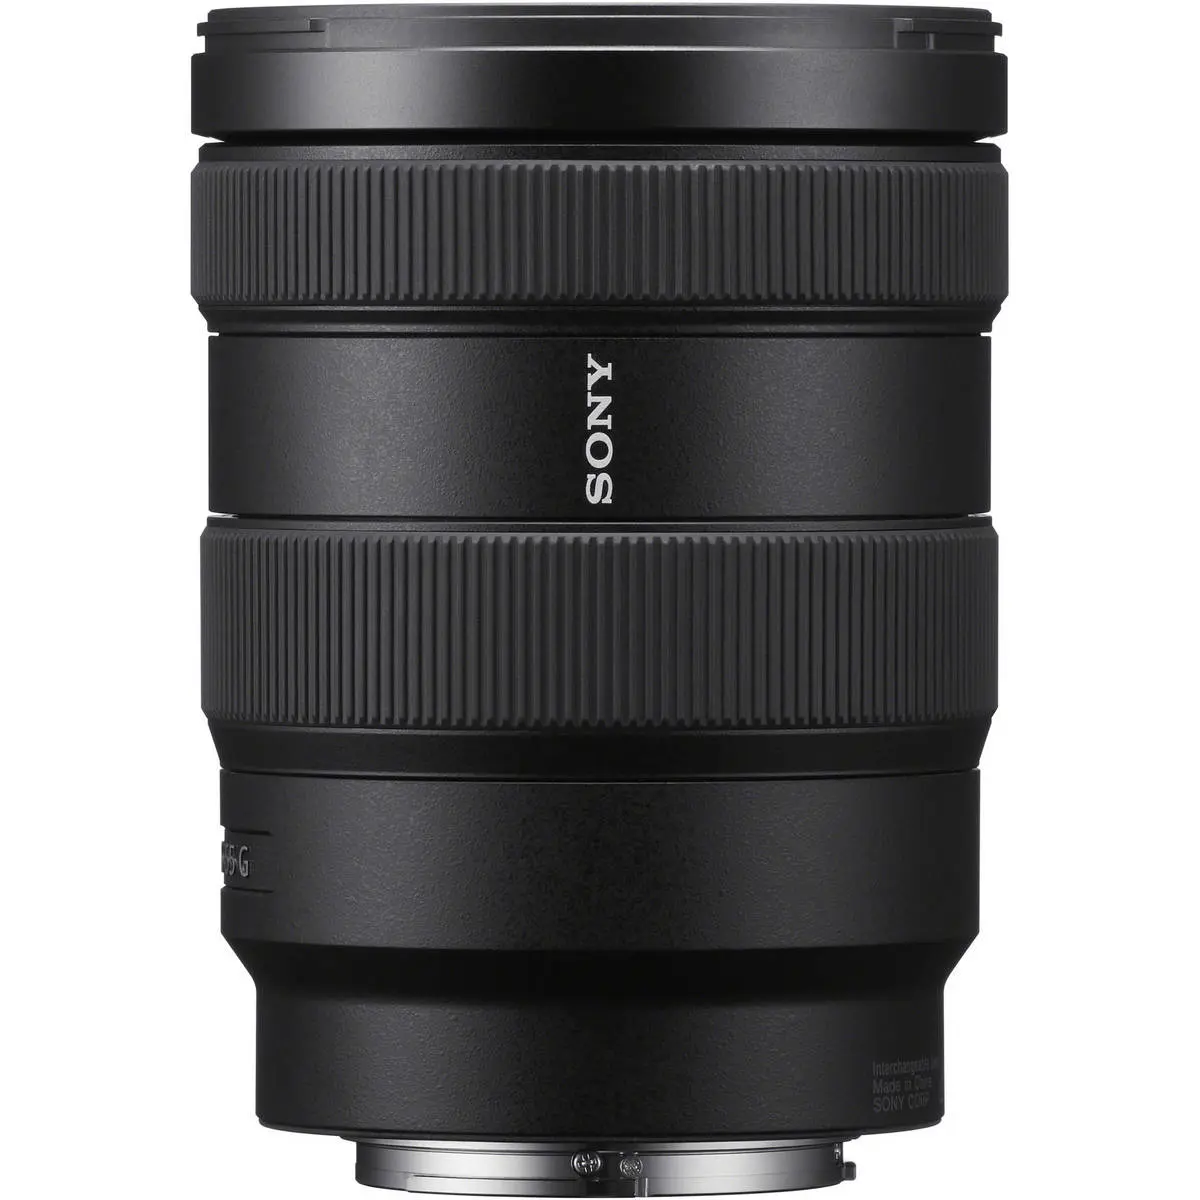 1. Sony E 16-55mm f/2.8 G Lens Lens